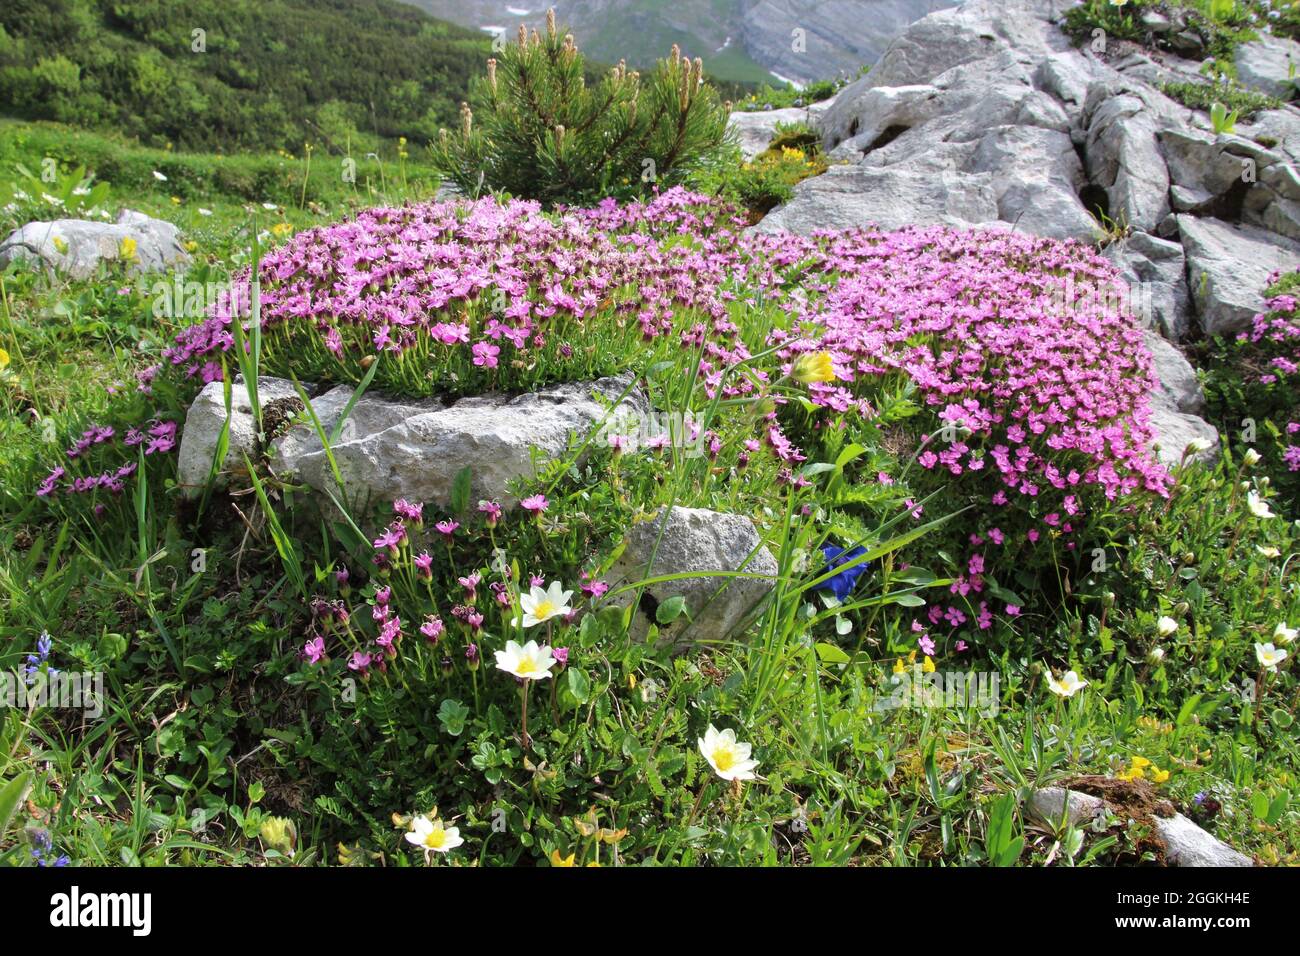 Impressionnante prairie de fleurs alpines avec concombre de clou de girofle ou sans tige (Silene acaulis), pin de montagne (Pinus mugo), arum d'argent blanc (Dryas octopetala), monts Karwendel, Tyrol, Autriche Banque D'Images